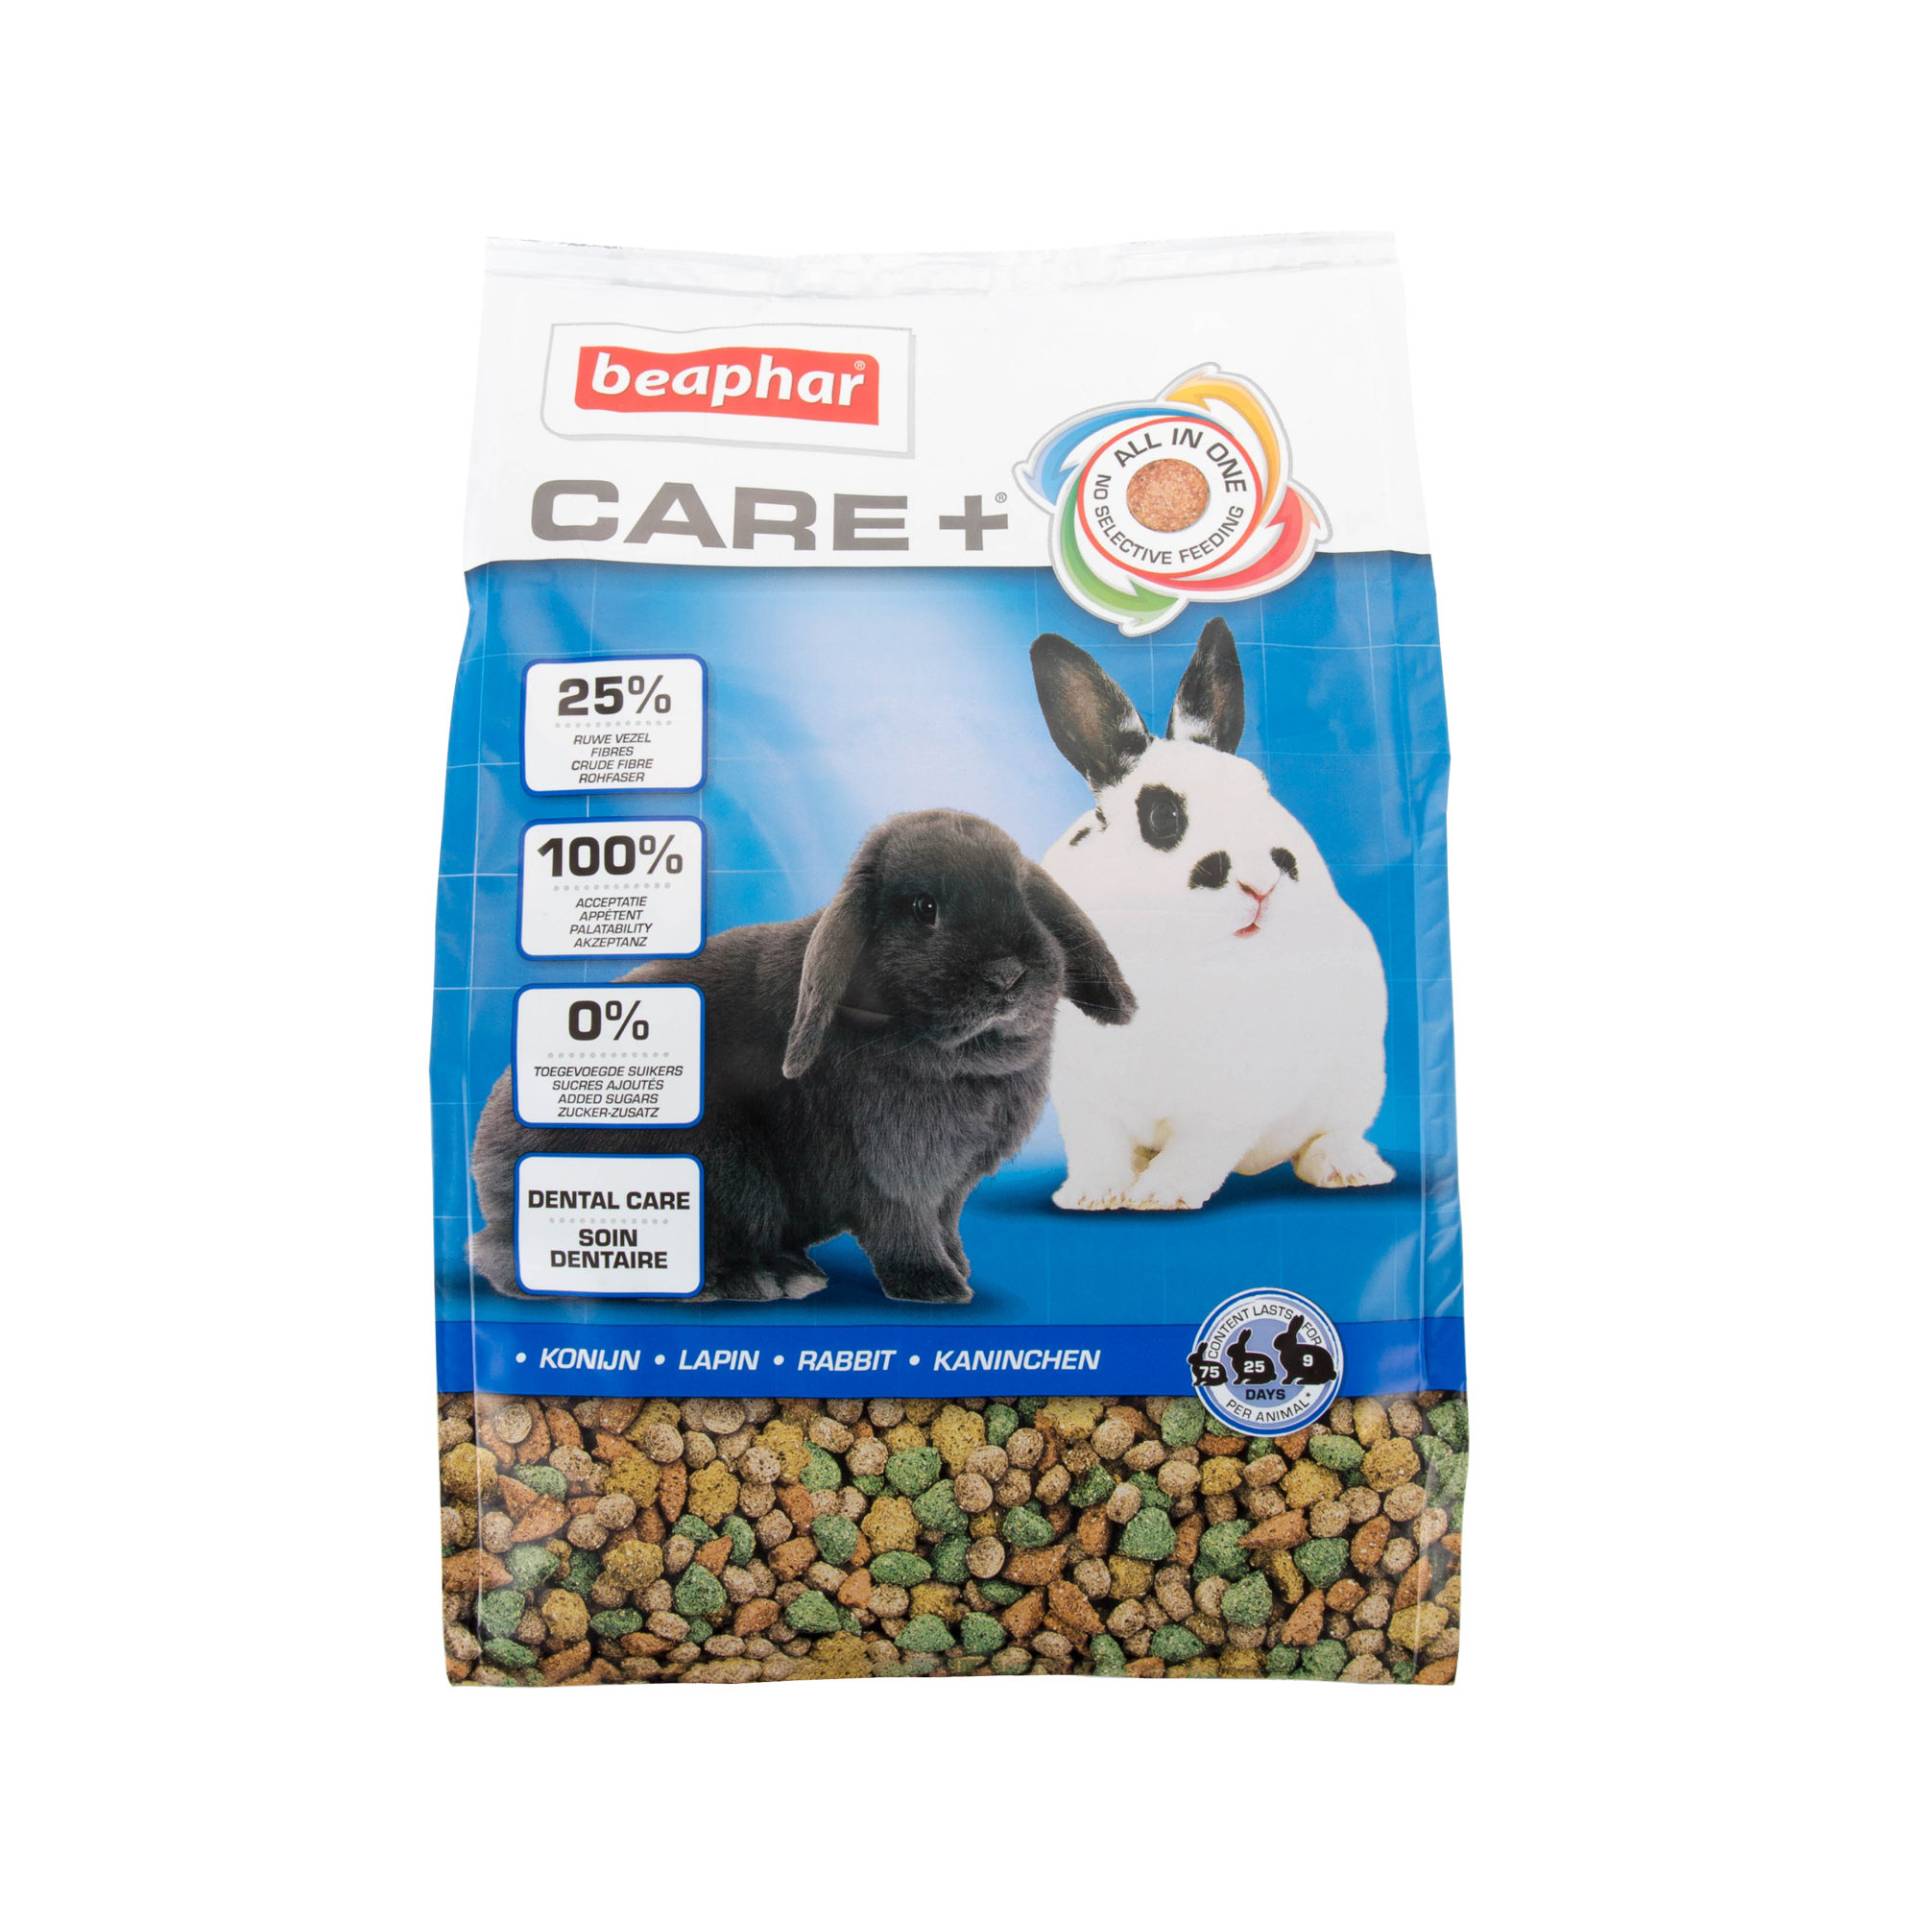 Beaphar Care+ Kaninchen - 5 kg von beaphar